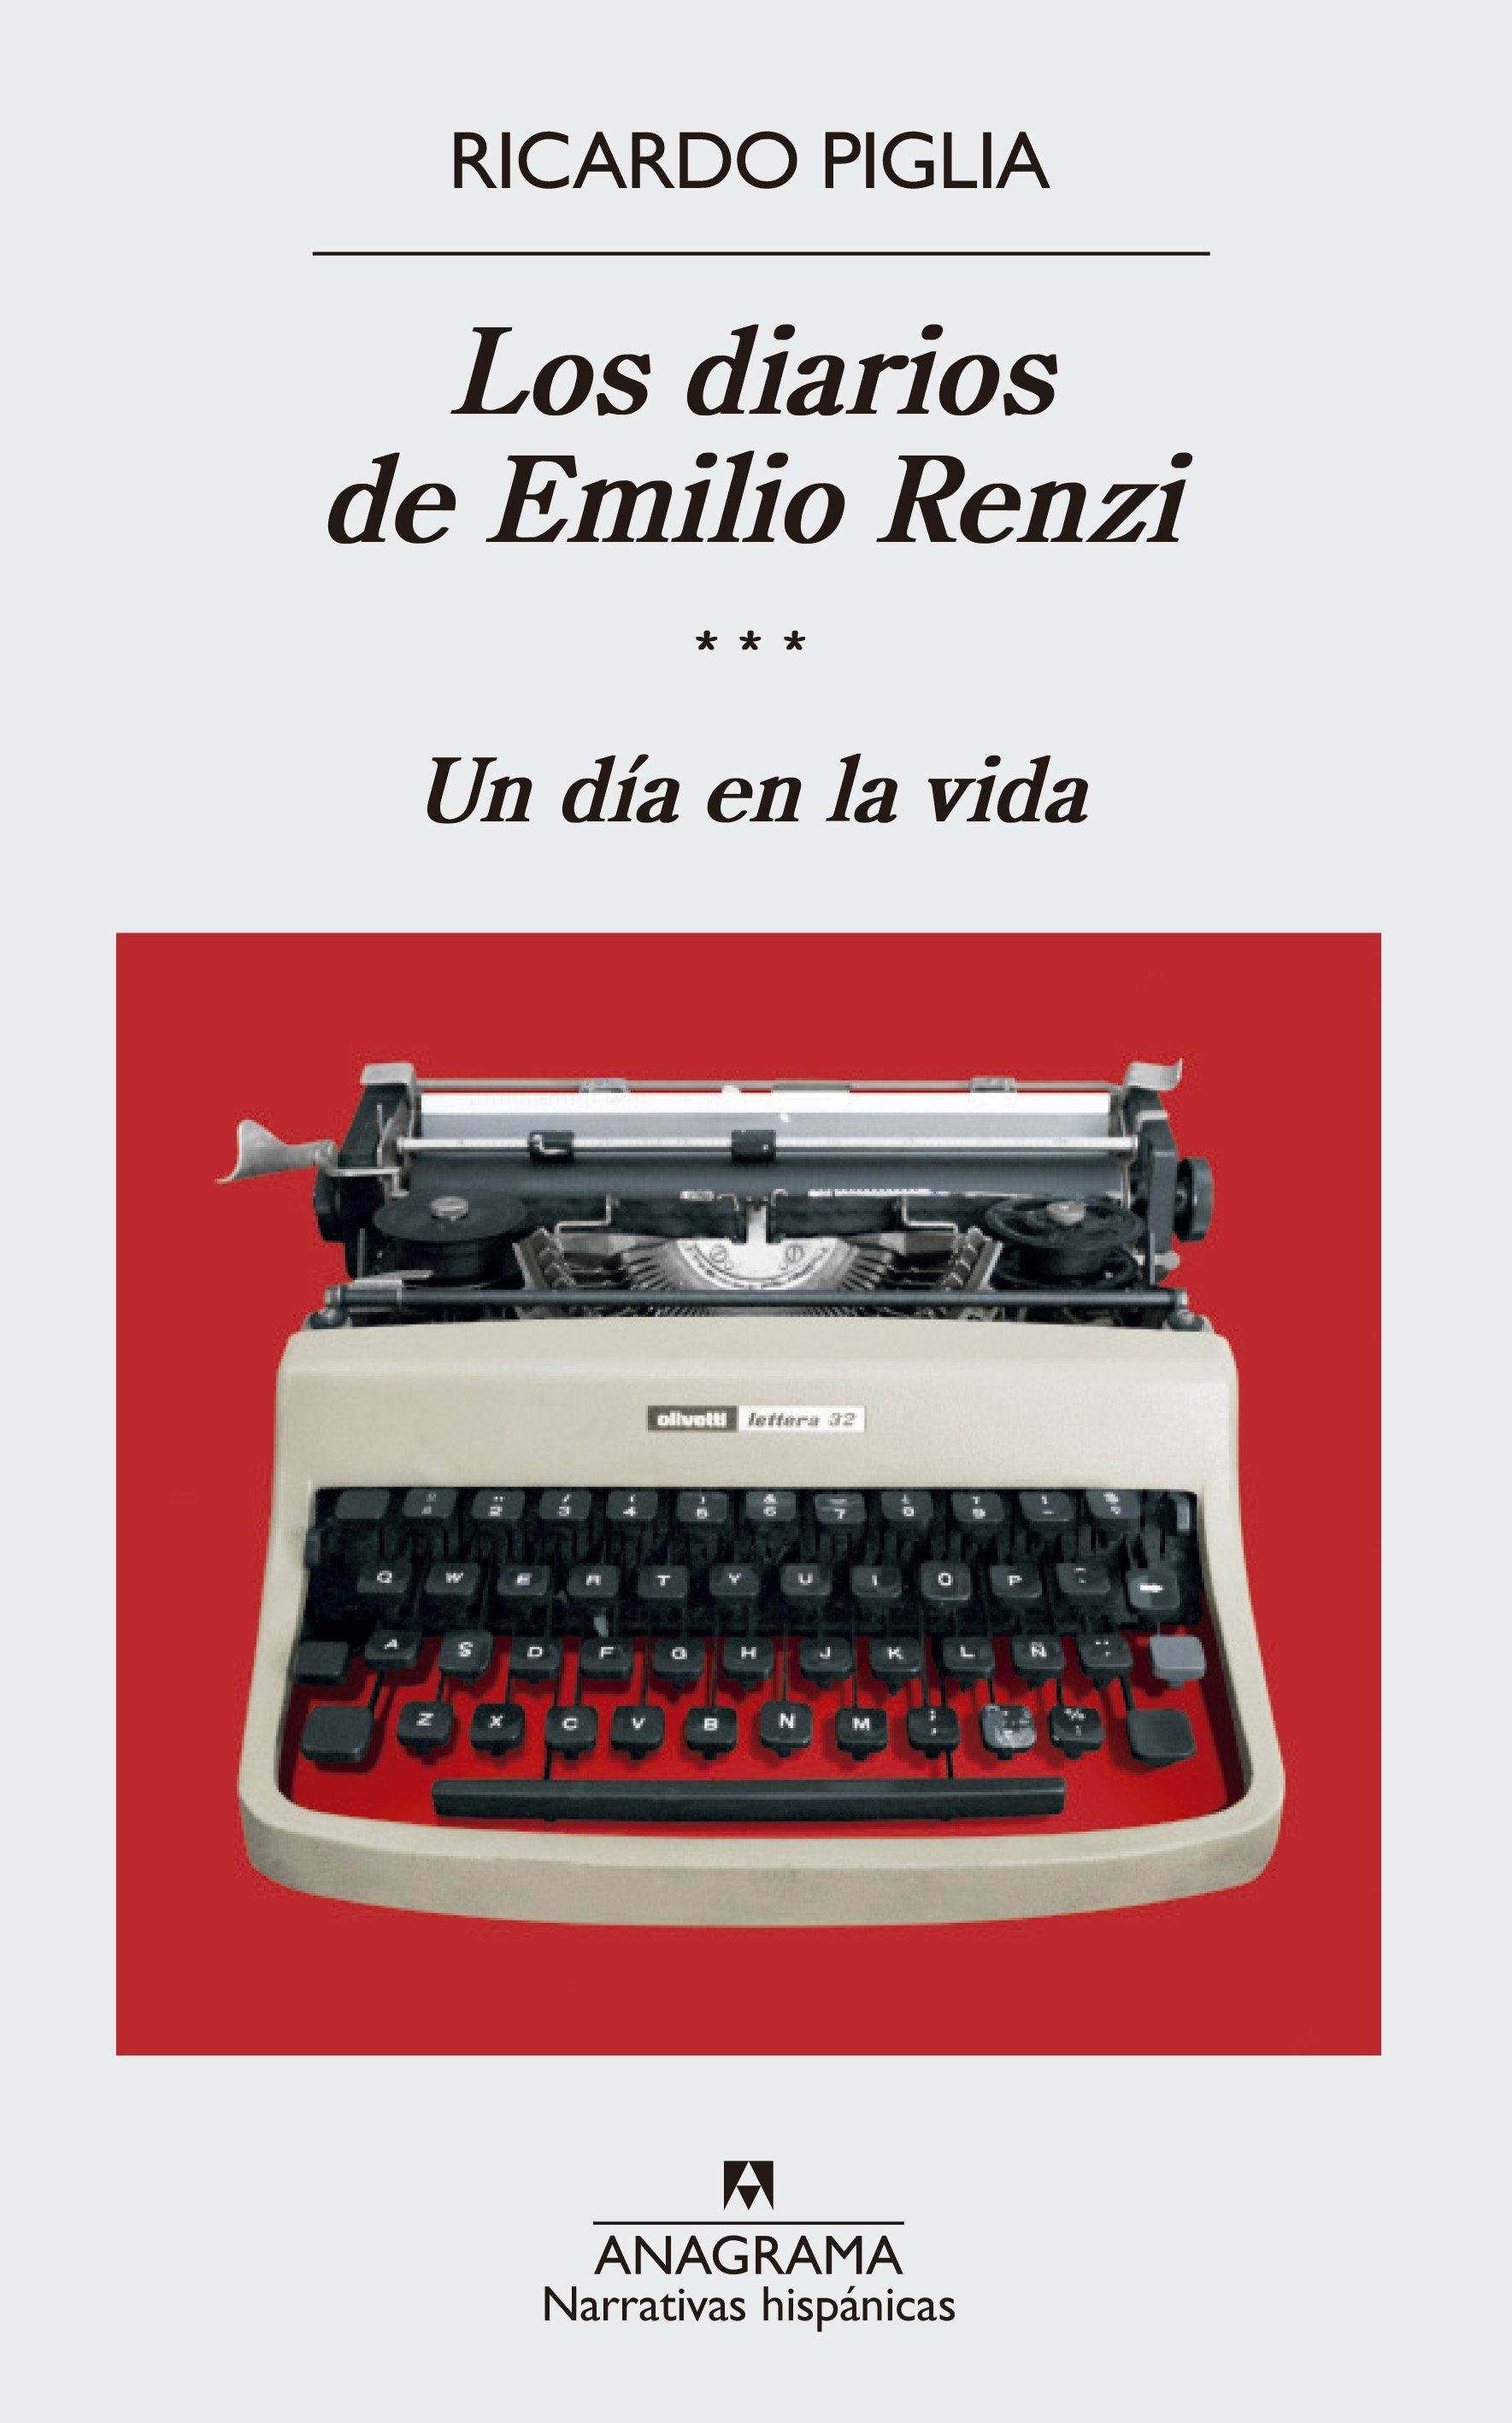 Los diarios de Emilio Renzi III "Un día en la vida". 